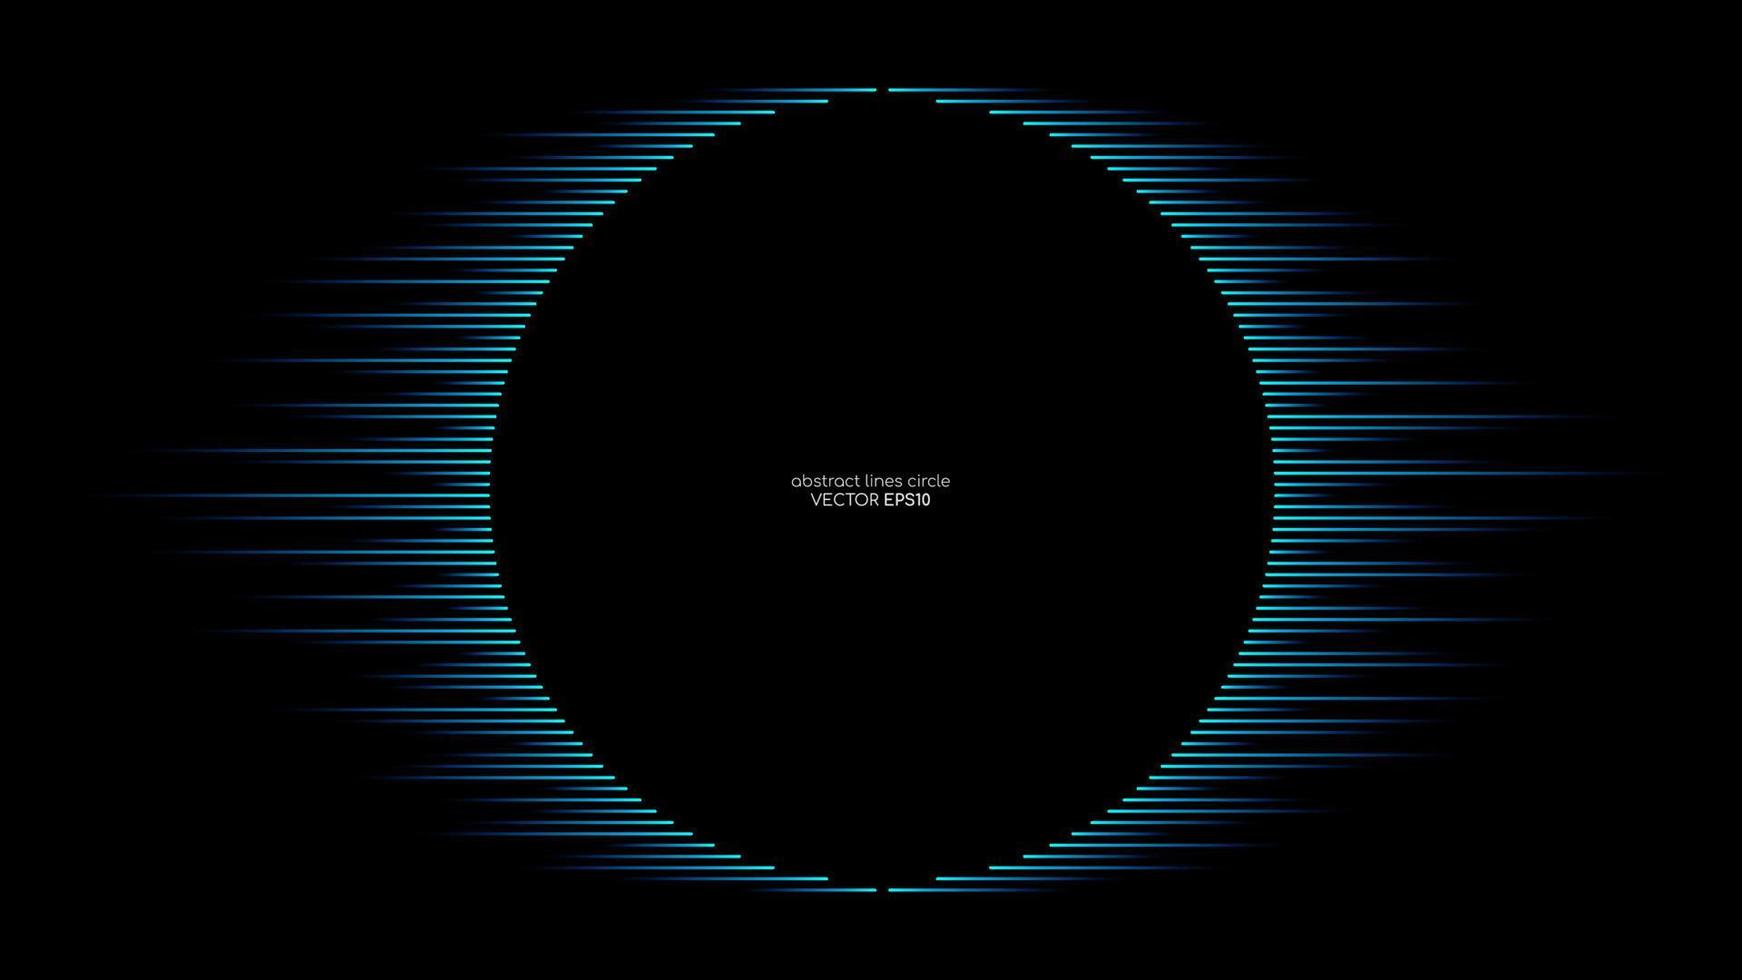 Vektor abstrakte Linien im runden Formrahmen des Kreises durch blaue Farbe lokalisiert auf schwarzem Hintergrund im Konzept Technologie, Musik, Wissenschaft, modern.